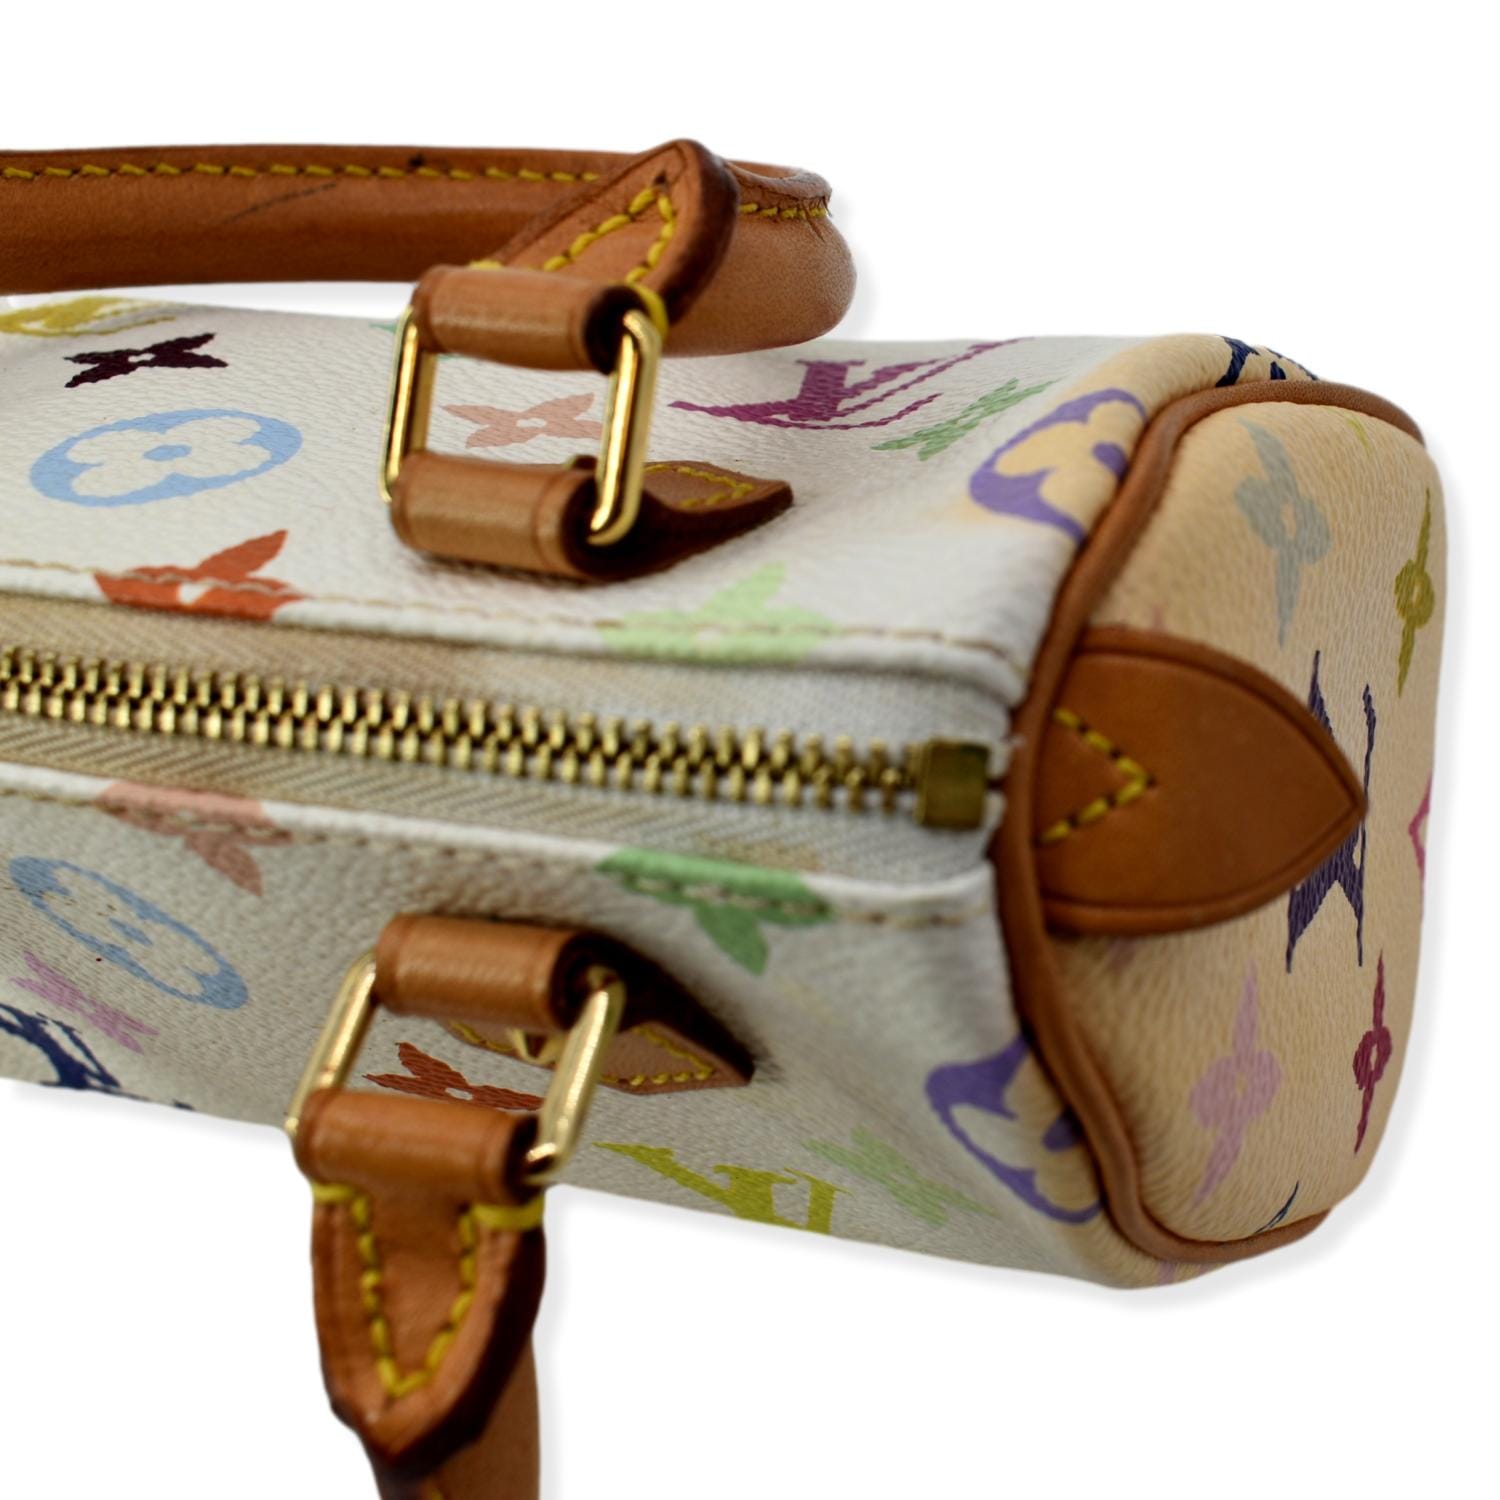 Authentic Louis Vuitton Murakami Multicolor Monogram 30 Speedy Handbag